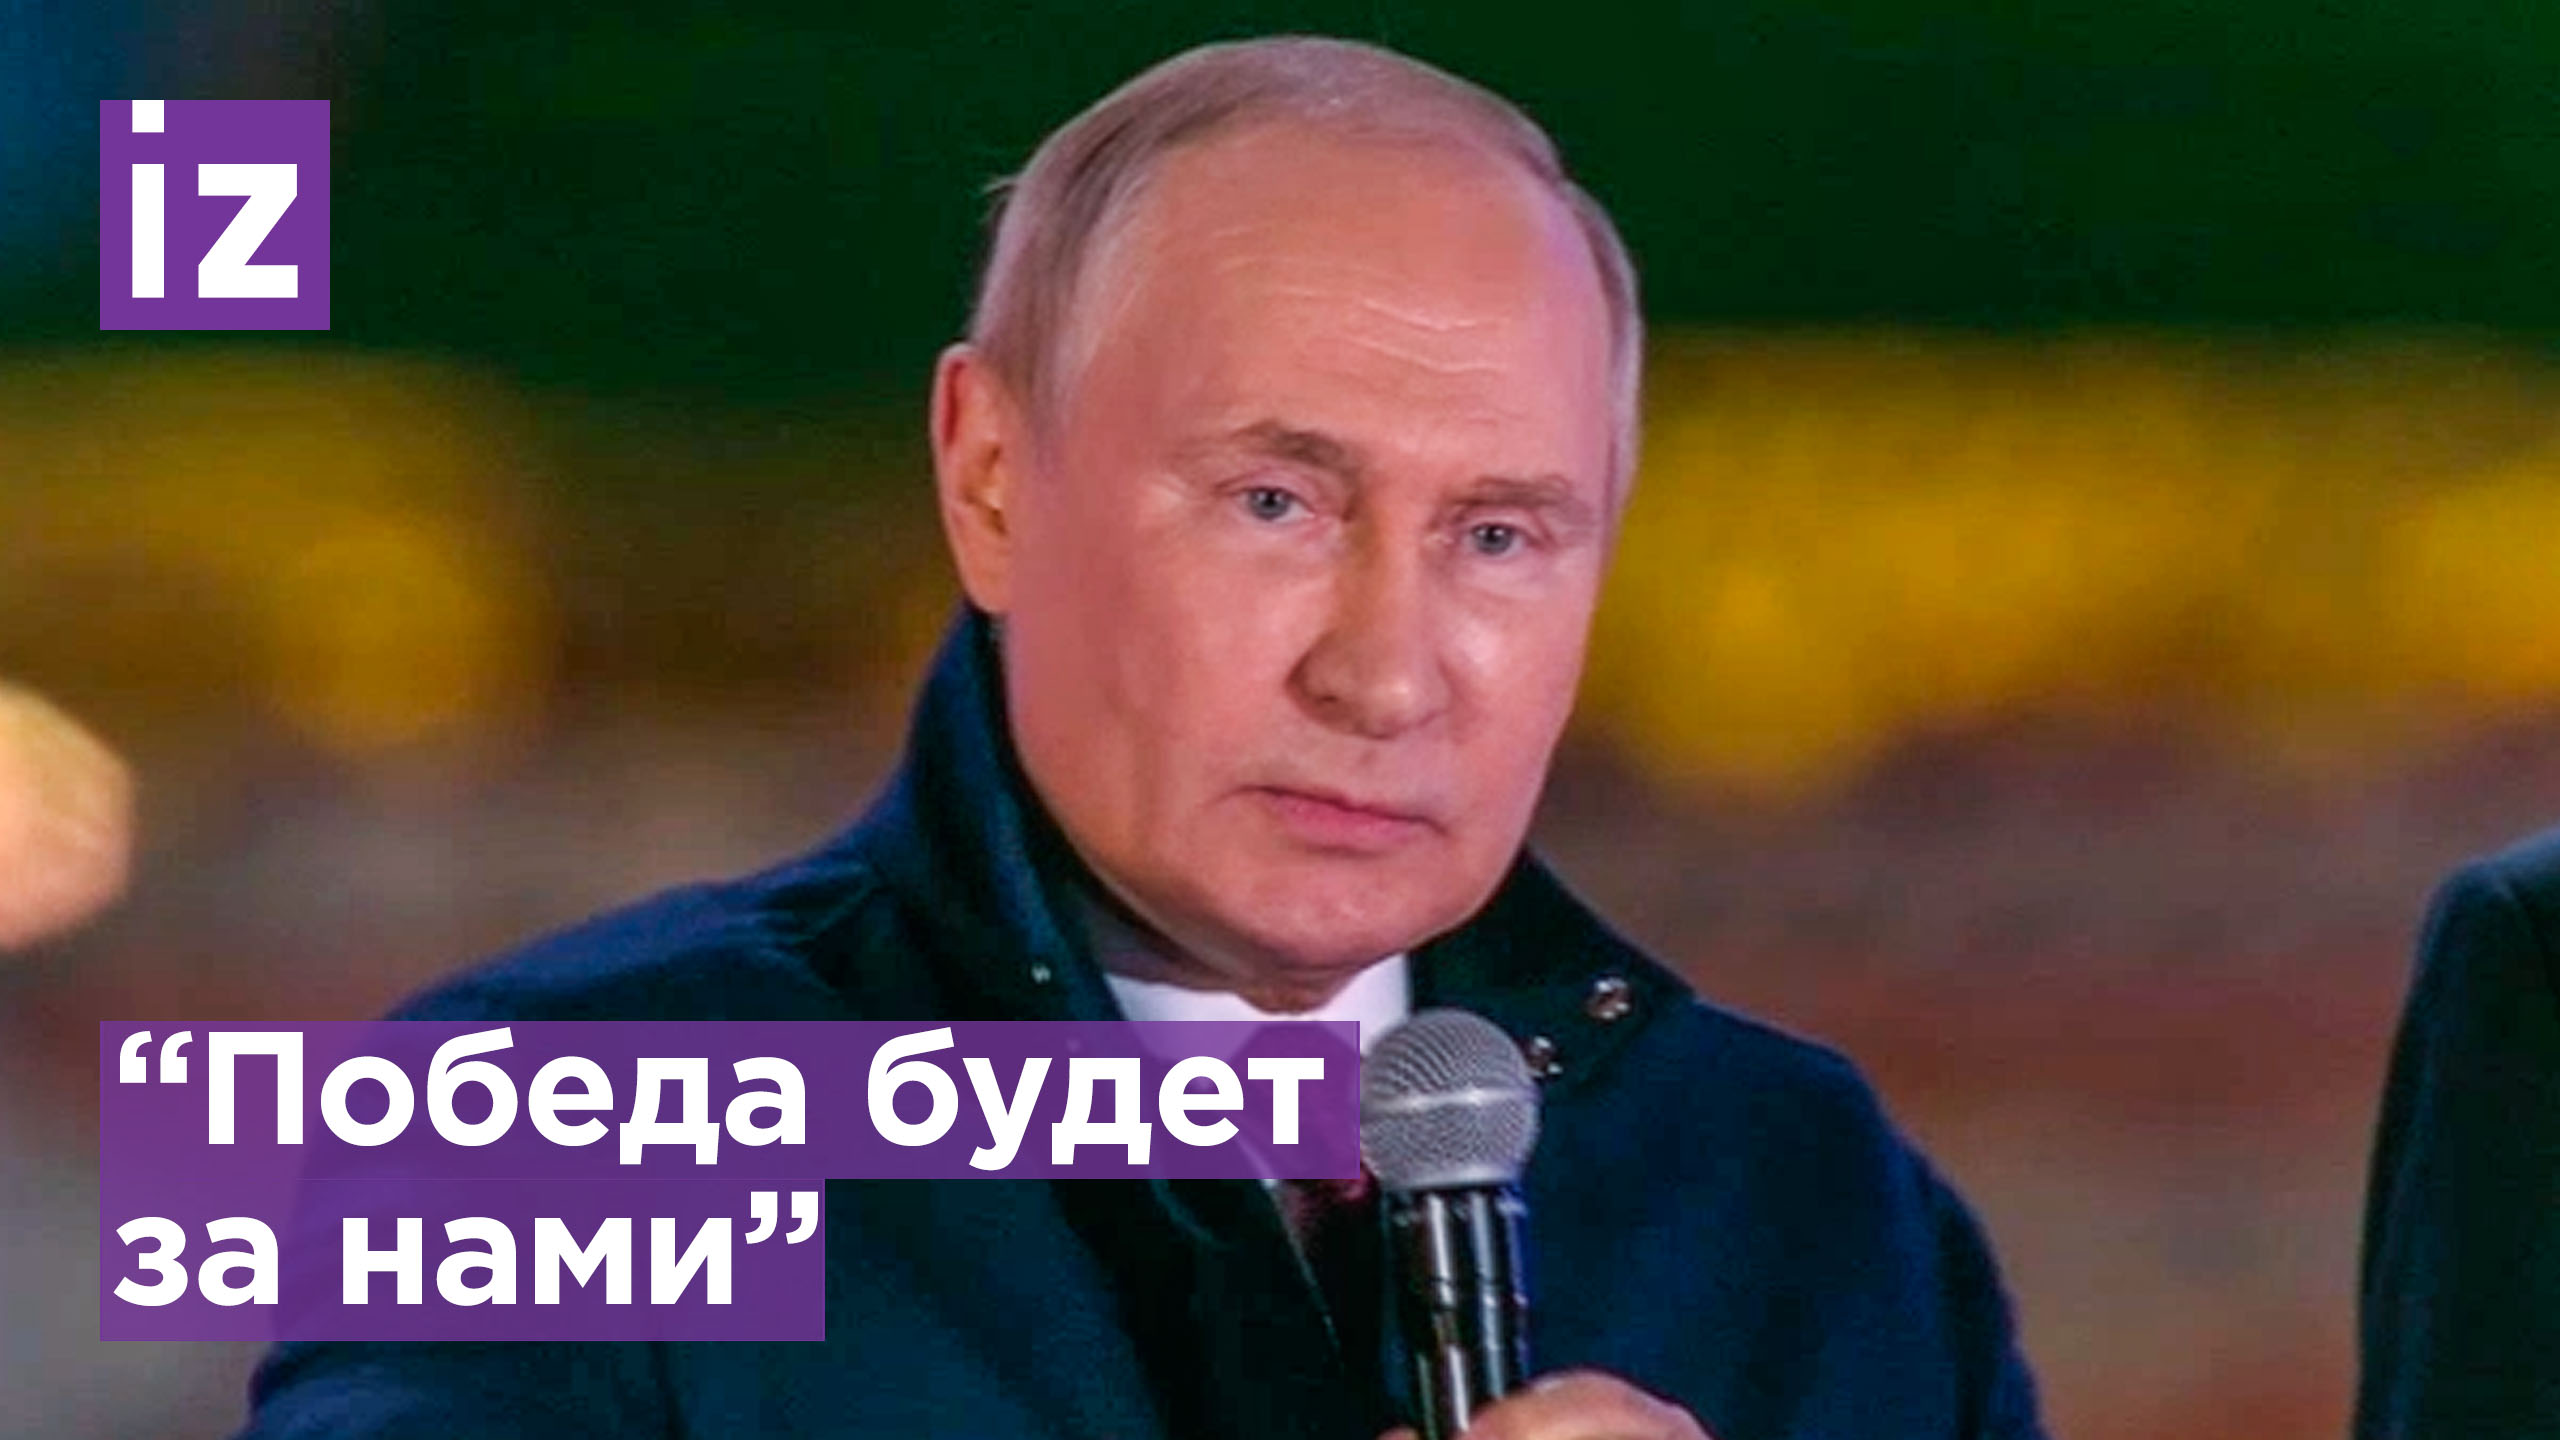 Путин призвал Красную площадь троекратным "ура" по команде приветствовать военных в Донбассе